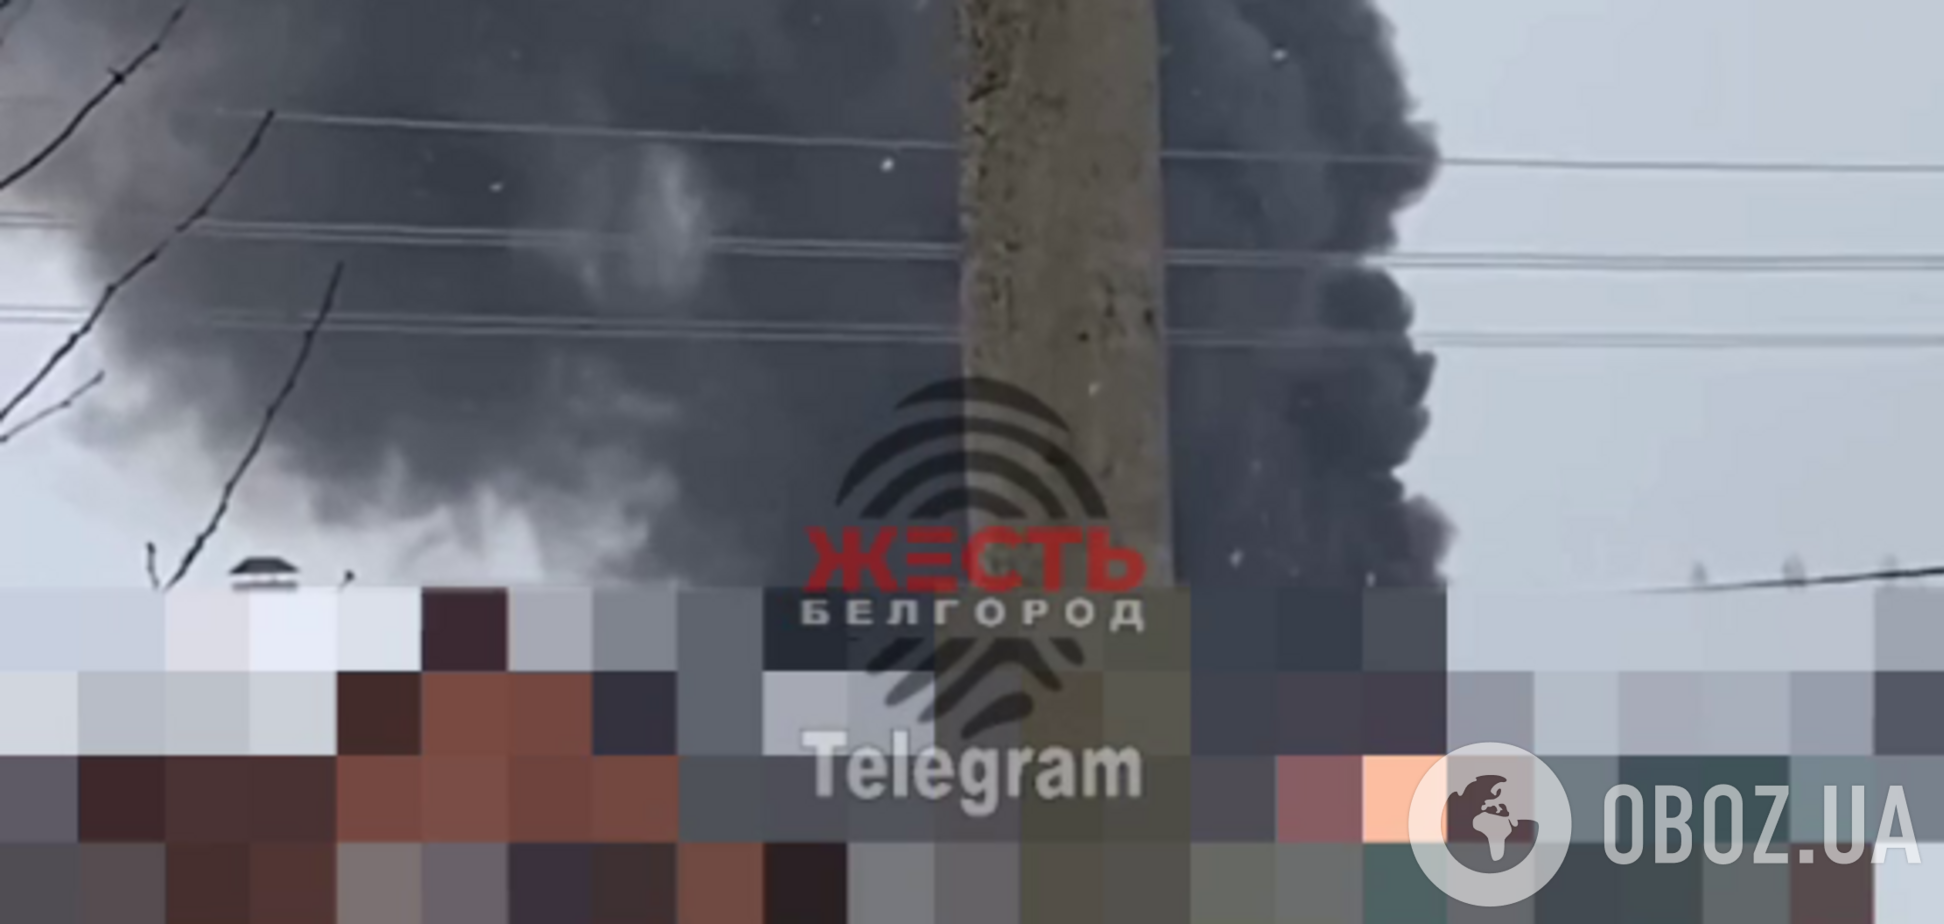 Пожар в Белгородской области